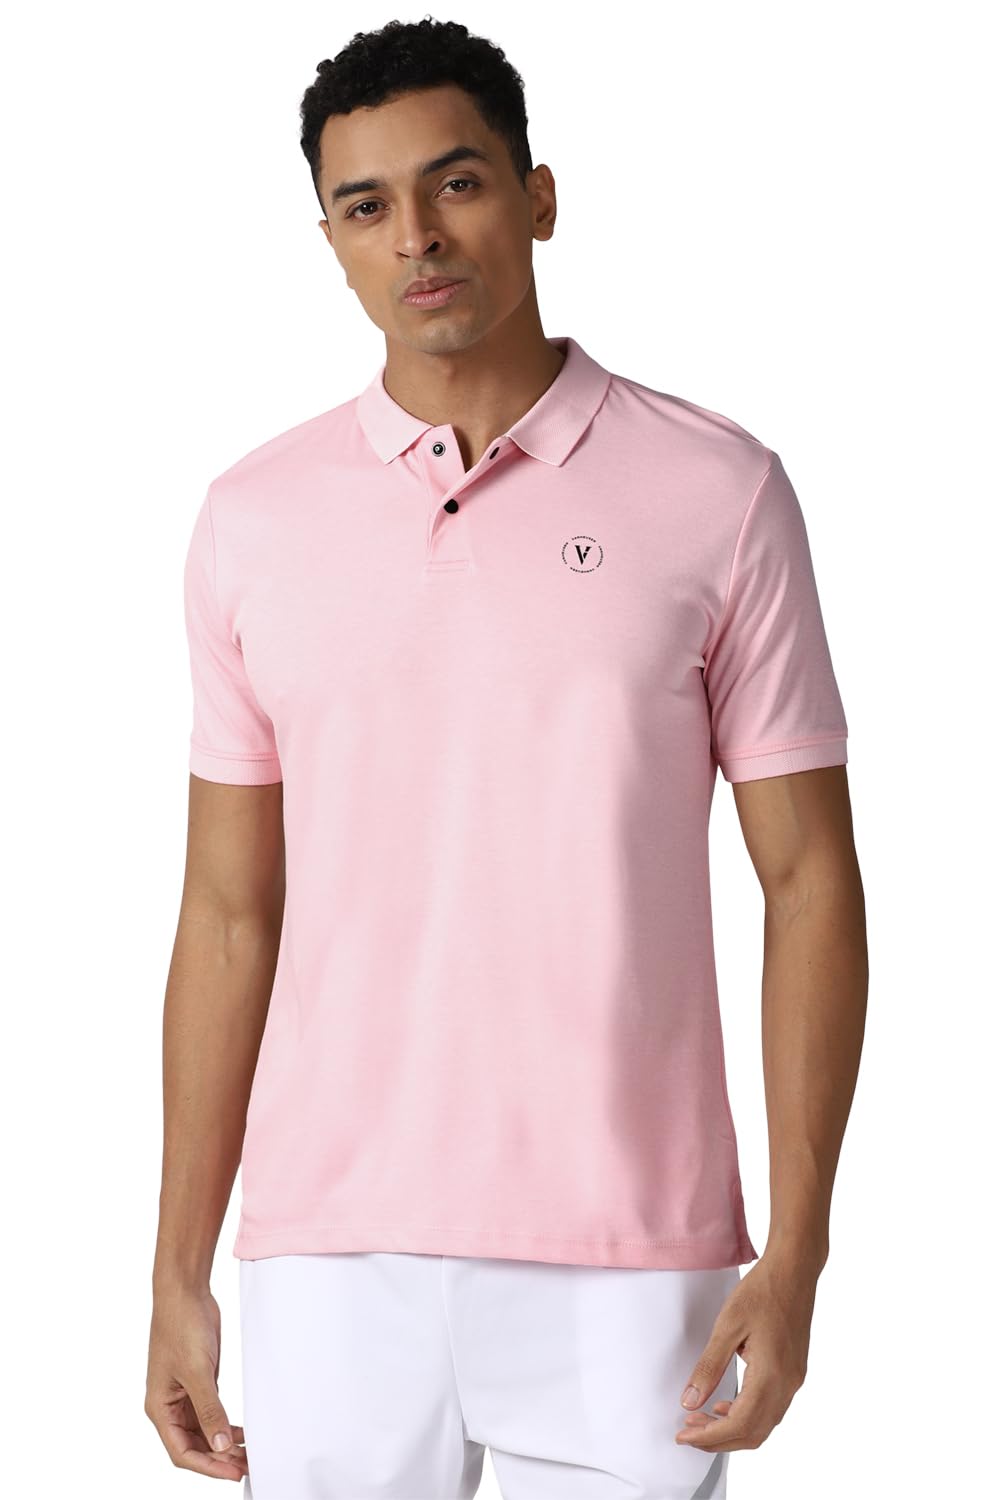 Van Heusen Men's Regular Fit T-Shirt (VFKPARGFN22680_Pink